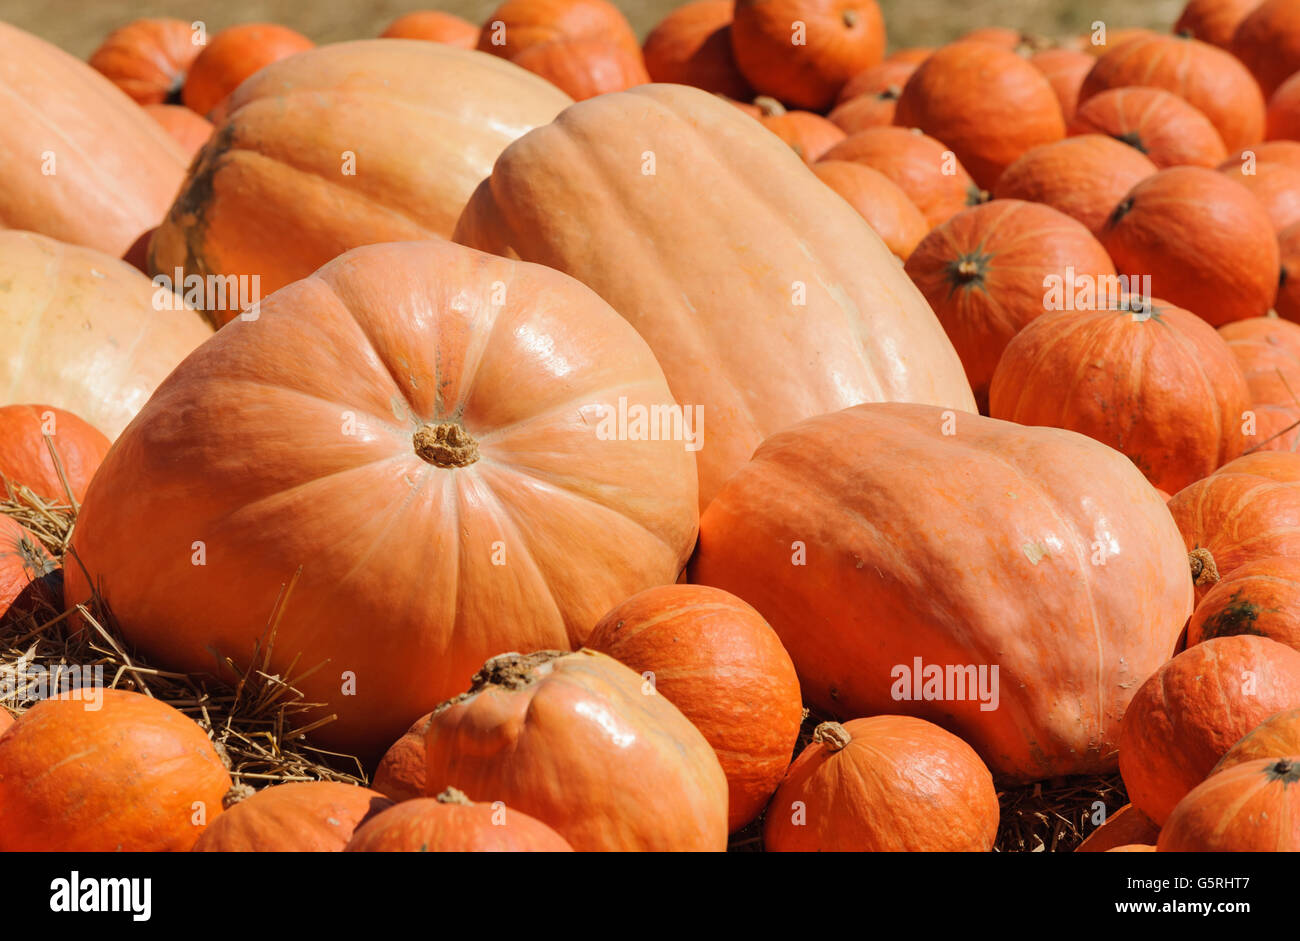 Pumpkin vegetable in Jim Thompson Farm,Thailand Stock Photo